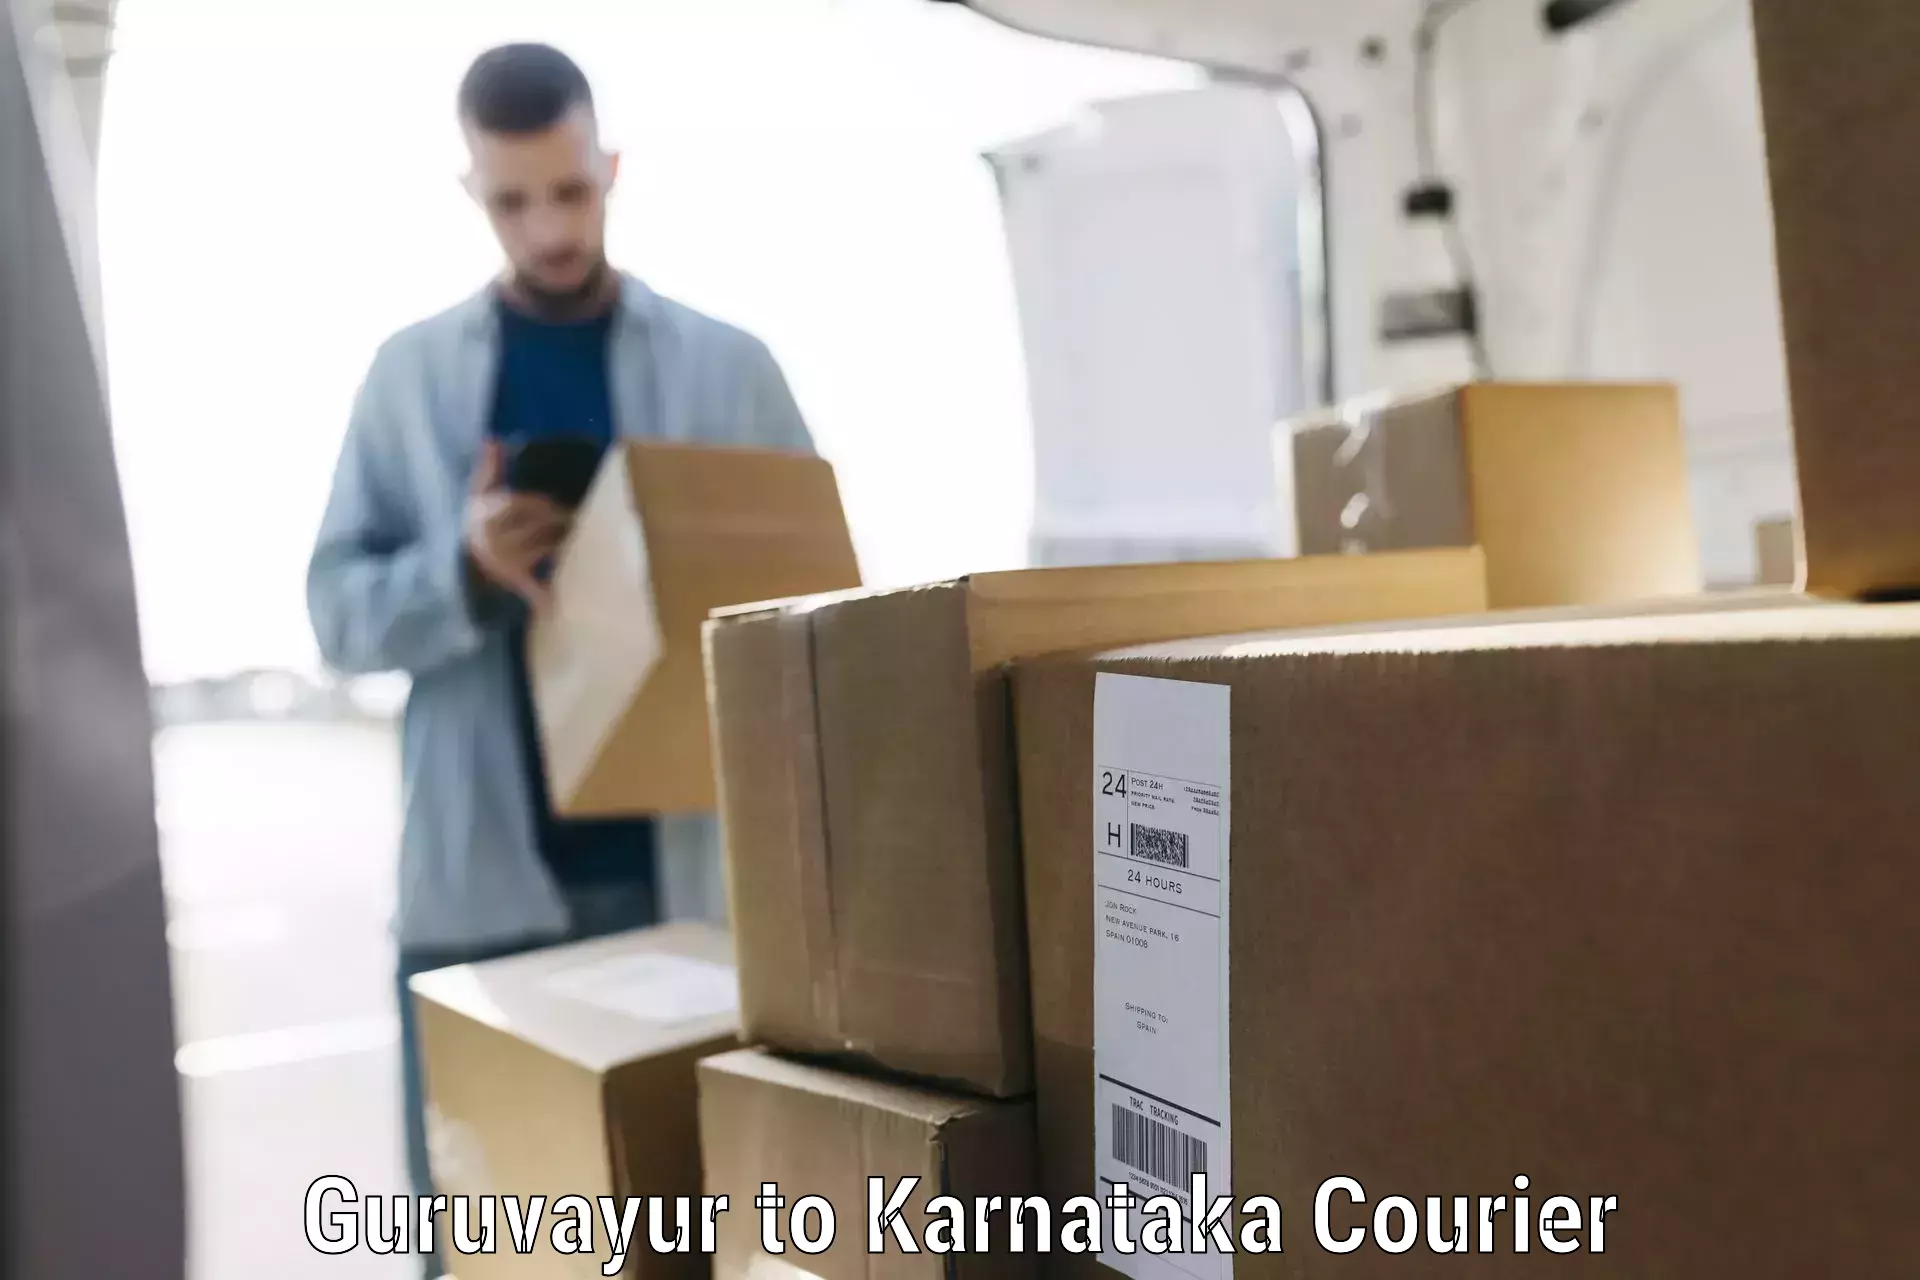 Scheduled baggage courier Guruvayur to Karnataka